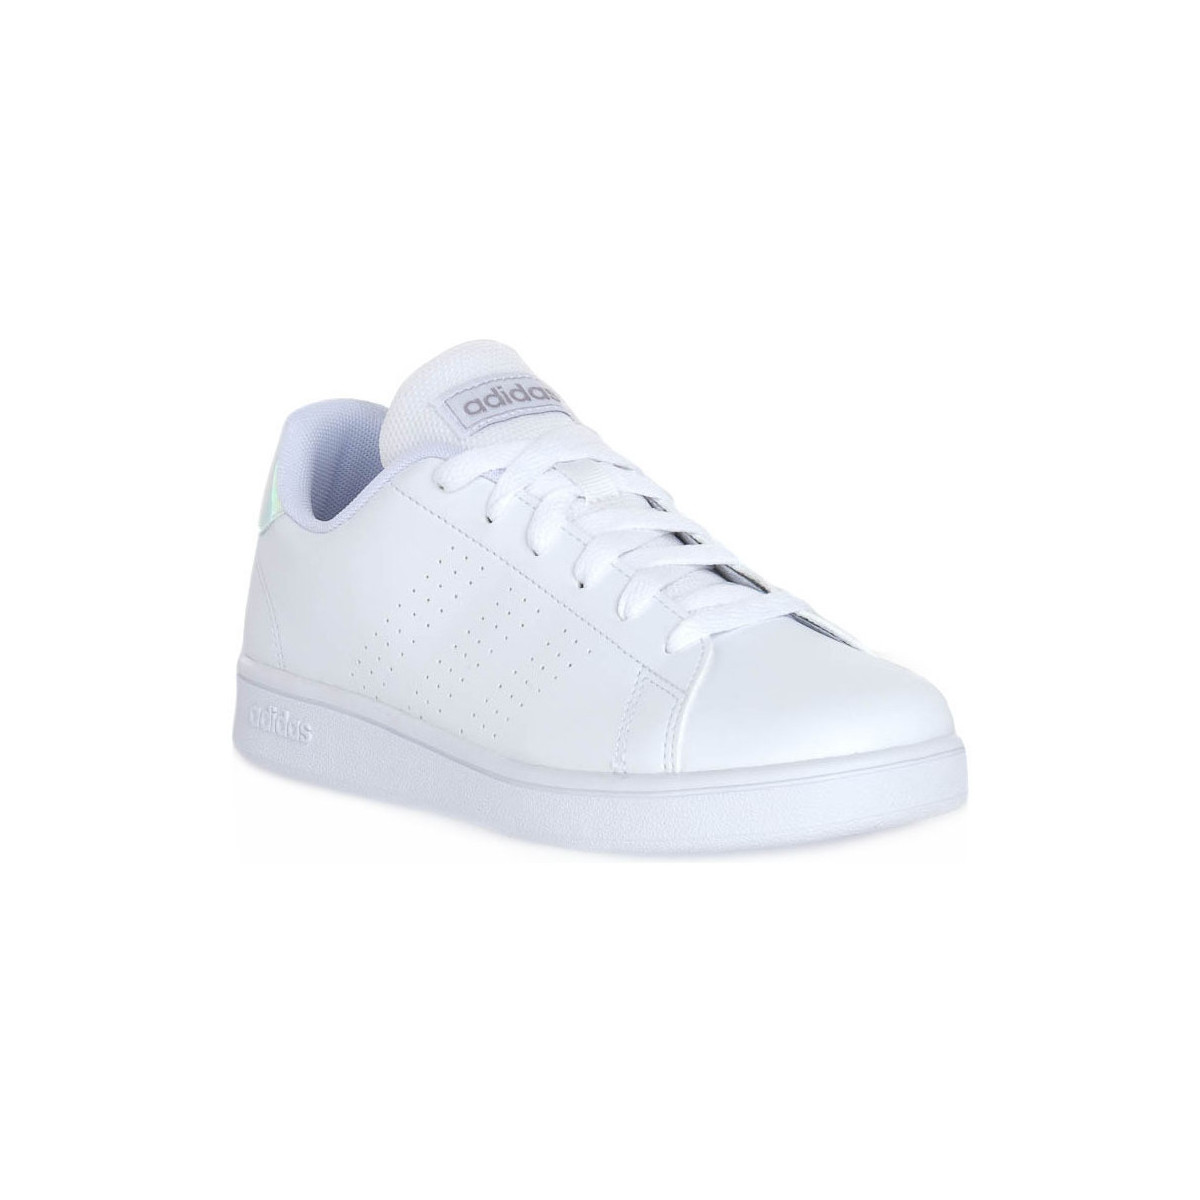 Sapatos Rapaz Sapatilhas adidas Originals ADVANTAGE K Branco